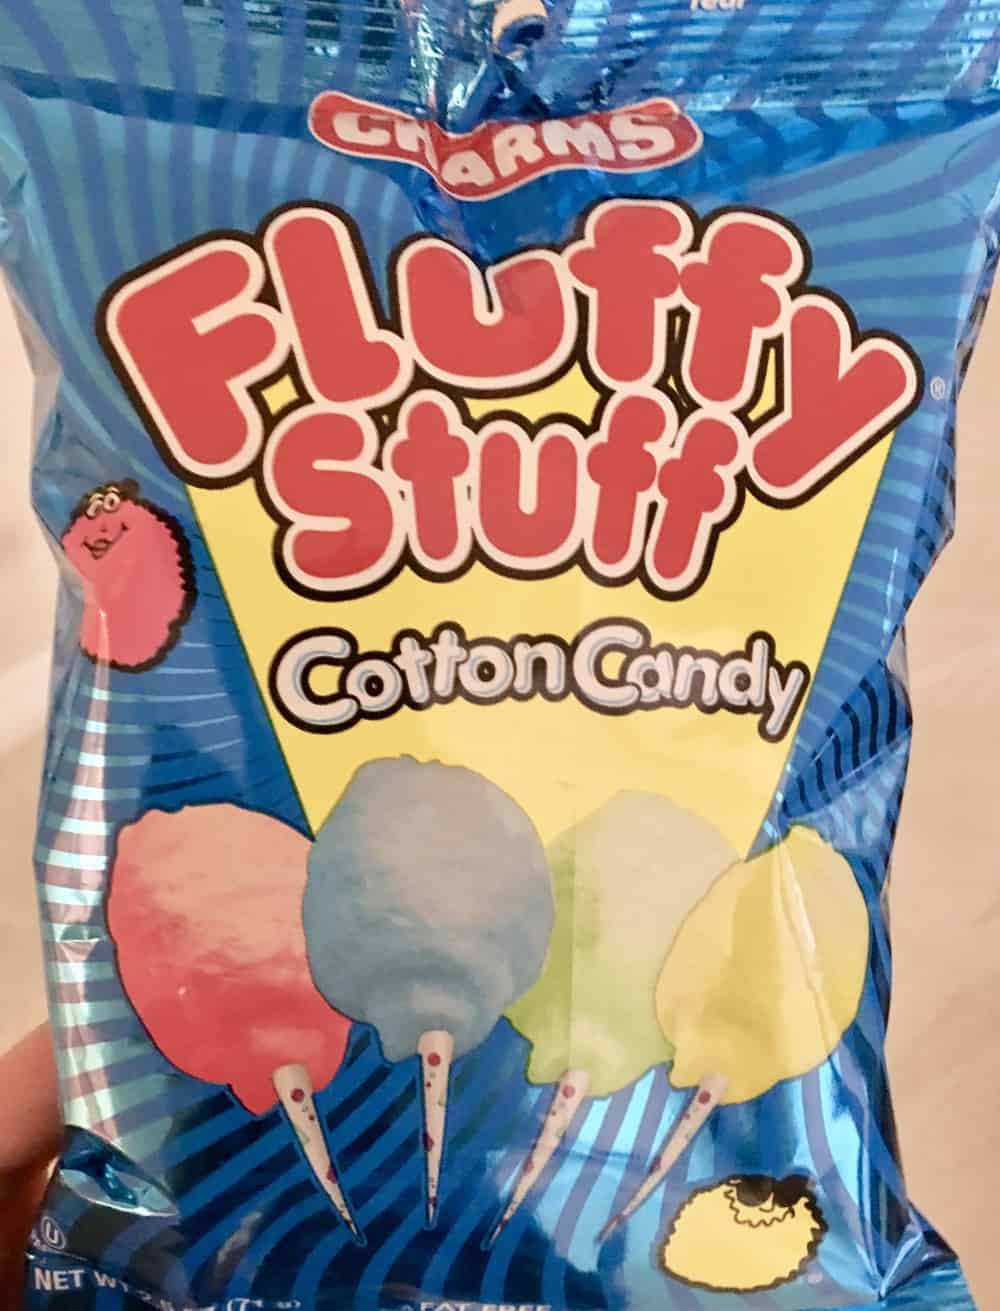 fluffy stuff cotton candy. 